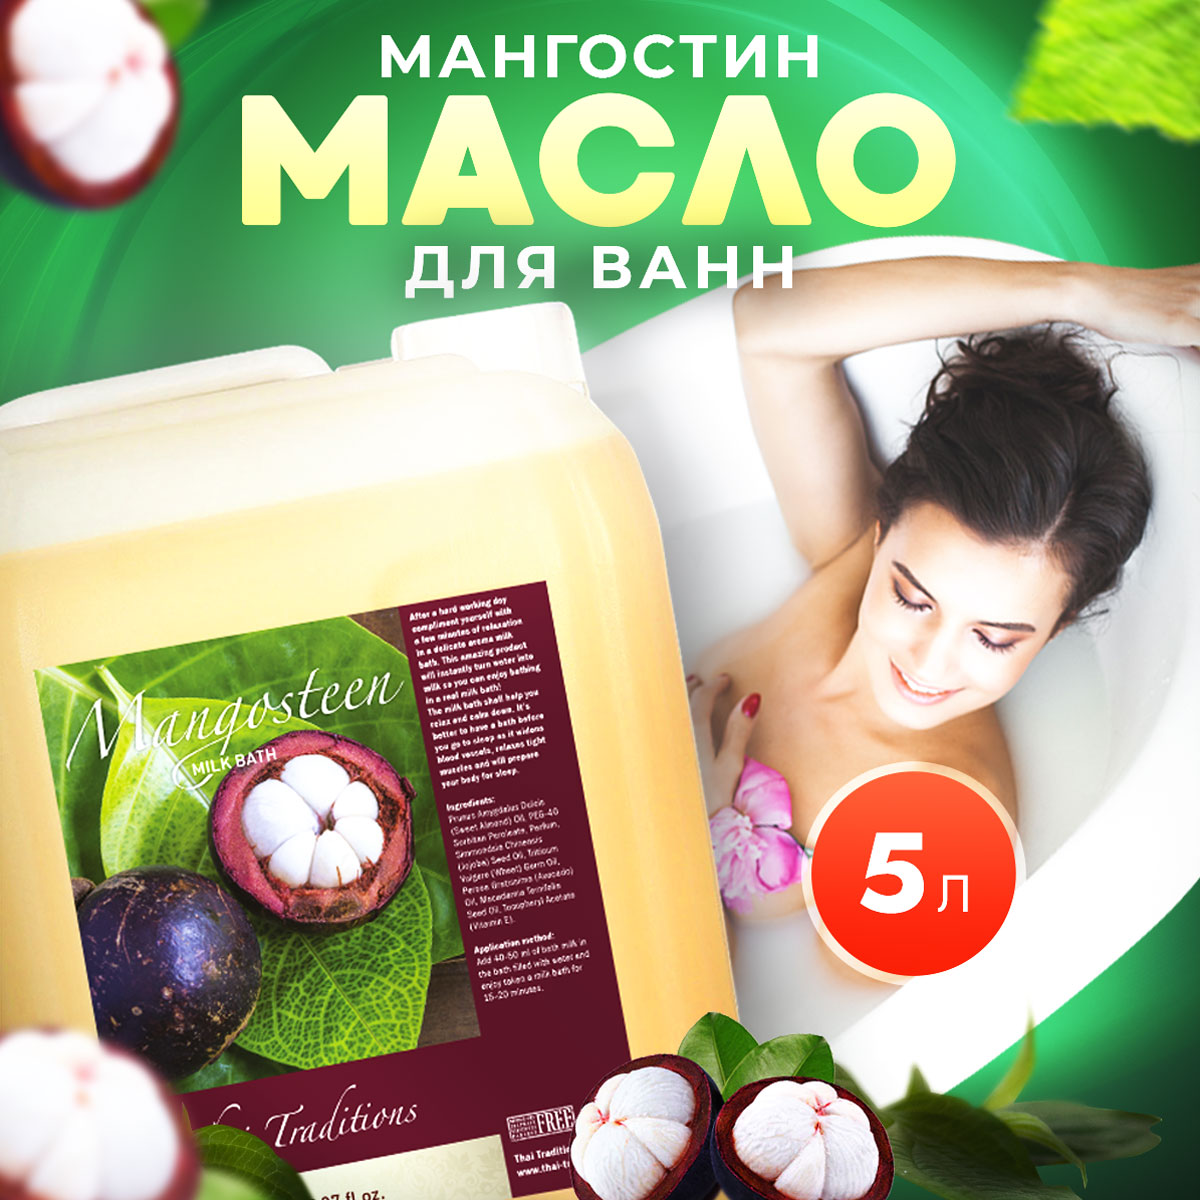 Масло для ванны и душа Thai Traditions натуральное гидрофильное увлажняющее Мангостин 5 л масло косметическое абрикос с витаминно антиоксидантным комплексом 30 мл